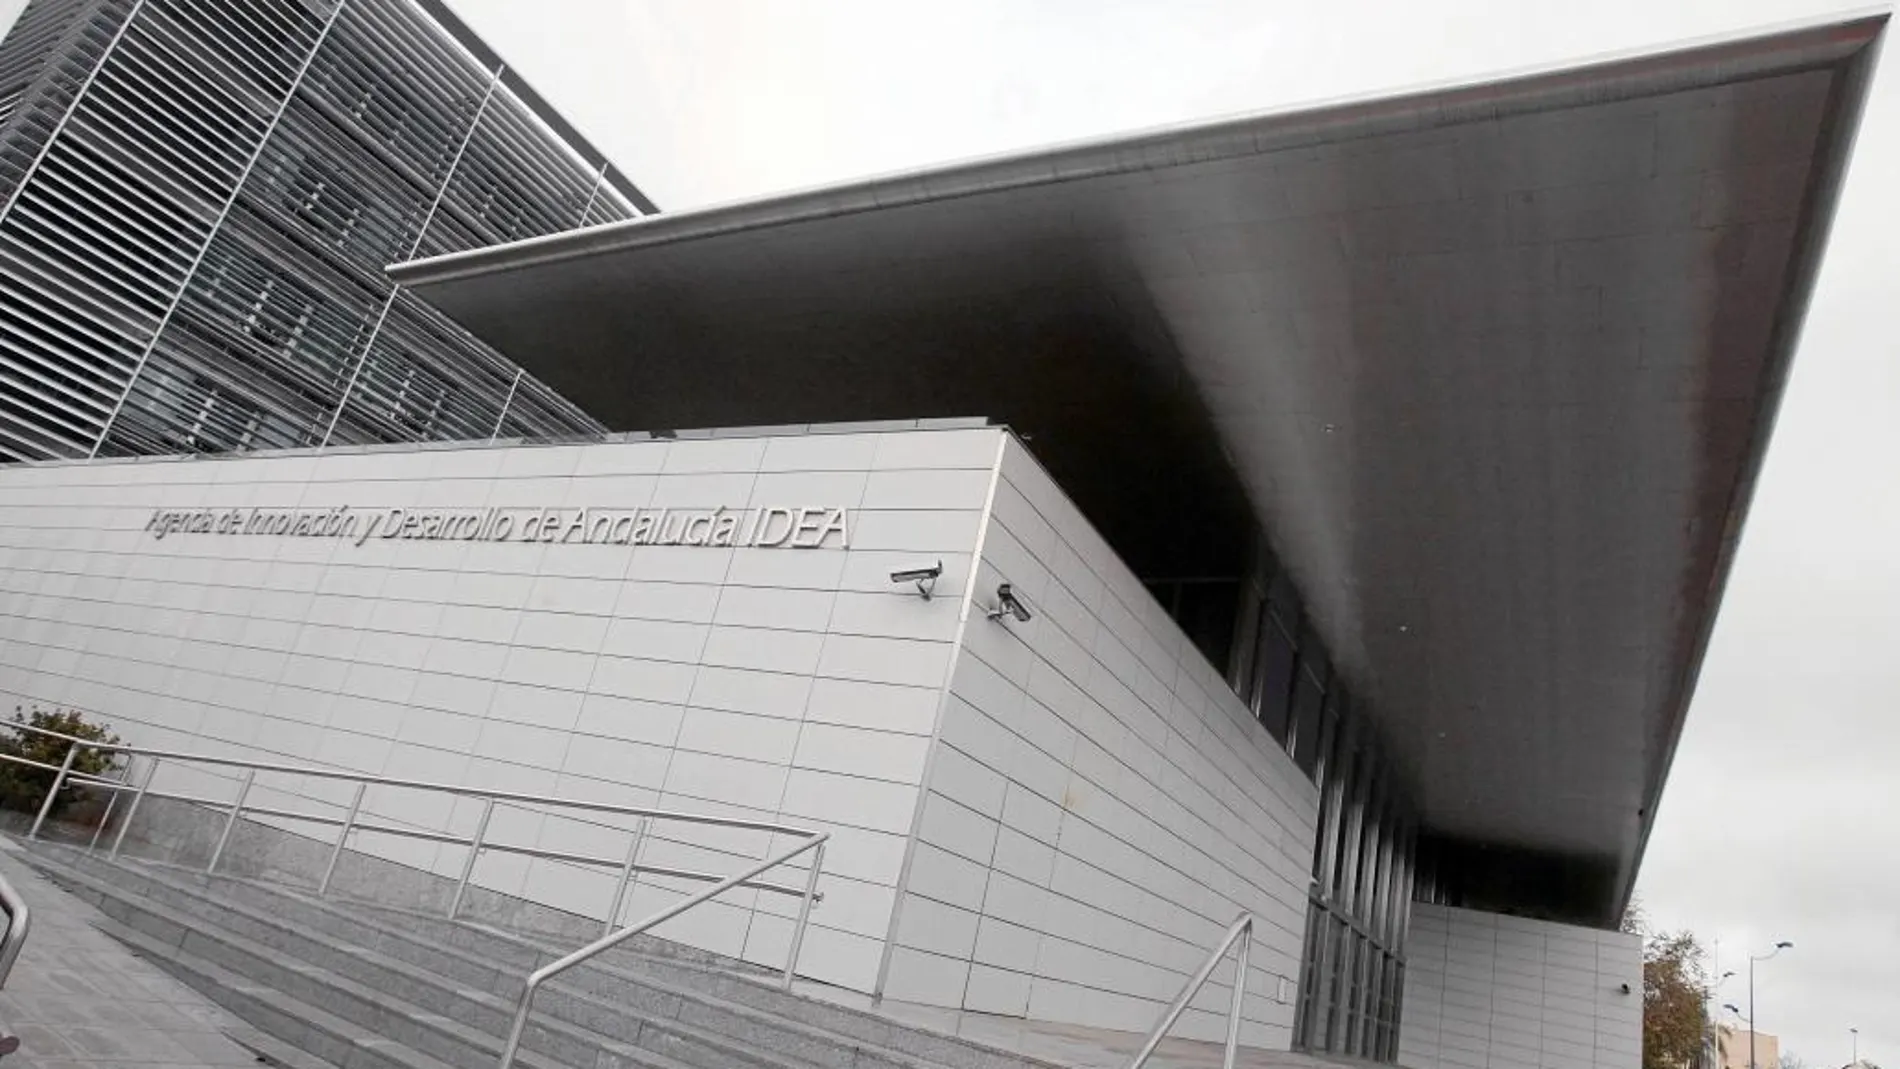 La nueva sede de la agencia IDEA, cuyo coste se ha elevado hasta los 20 millones de euros